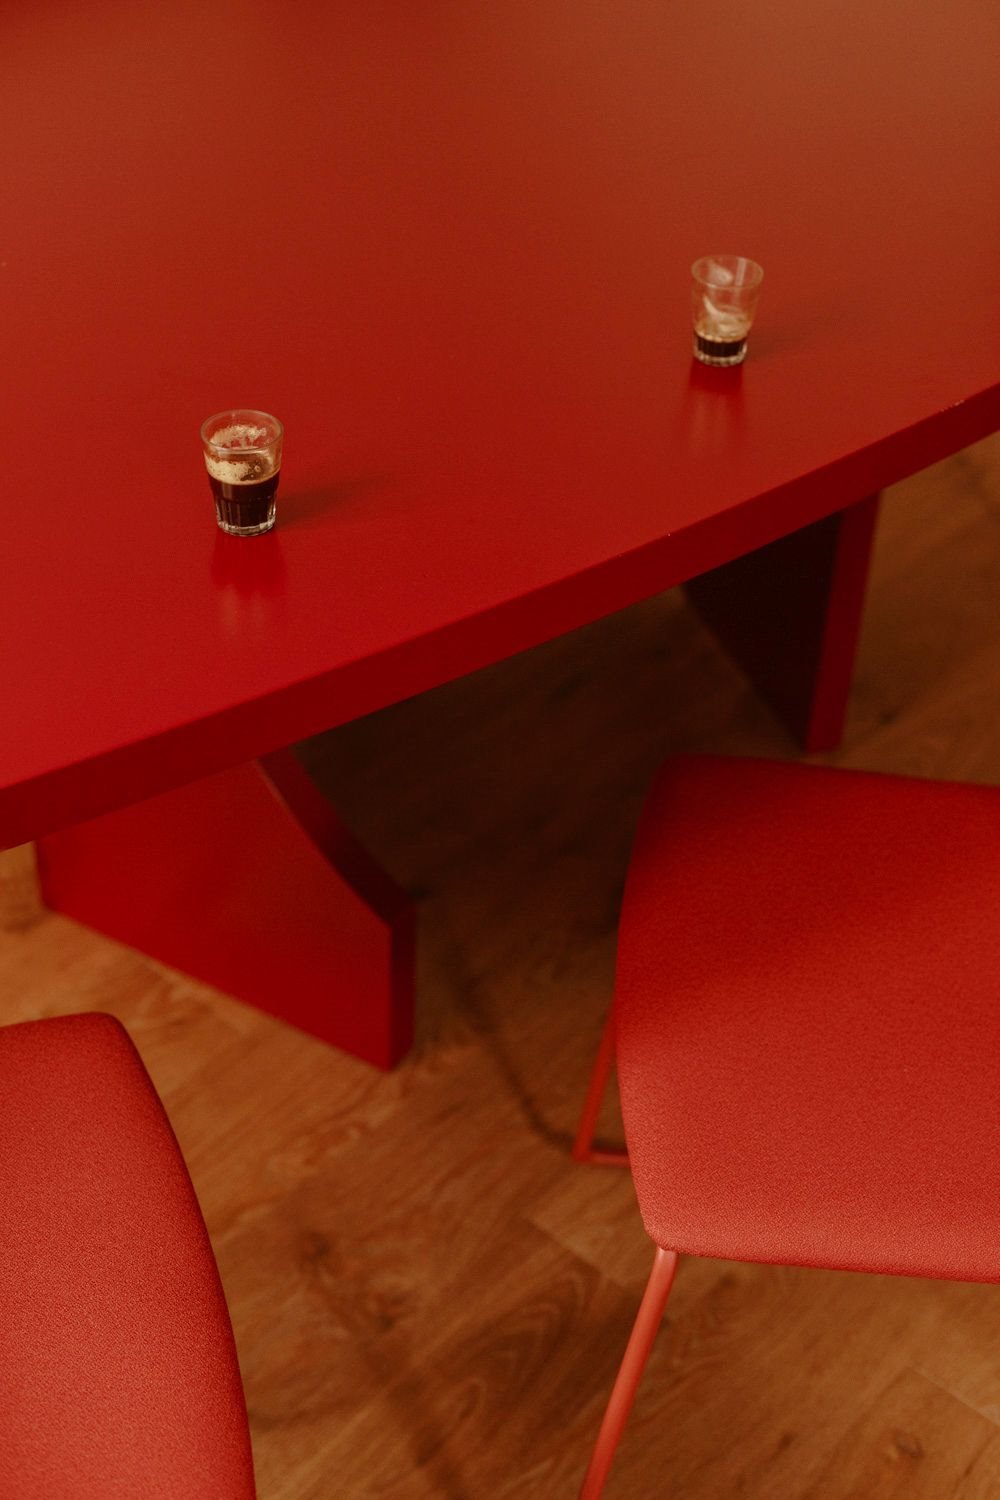 Como dice Román Sarrió, eligieron esta mesa porque "es una gran solución para personas como nosotros cuyo comedor pide una mesa rectangular, pero ama la sensación de las redondas".